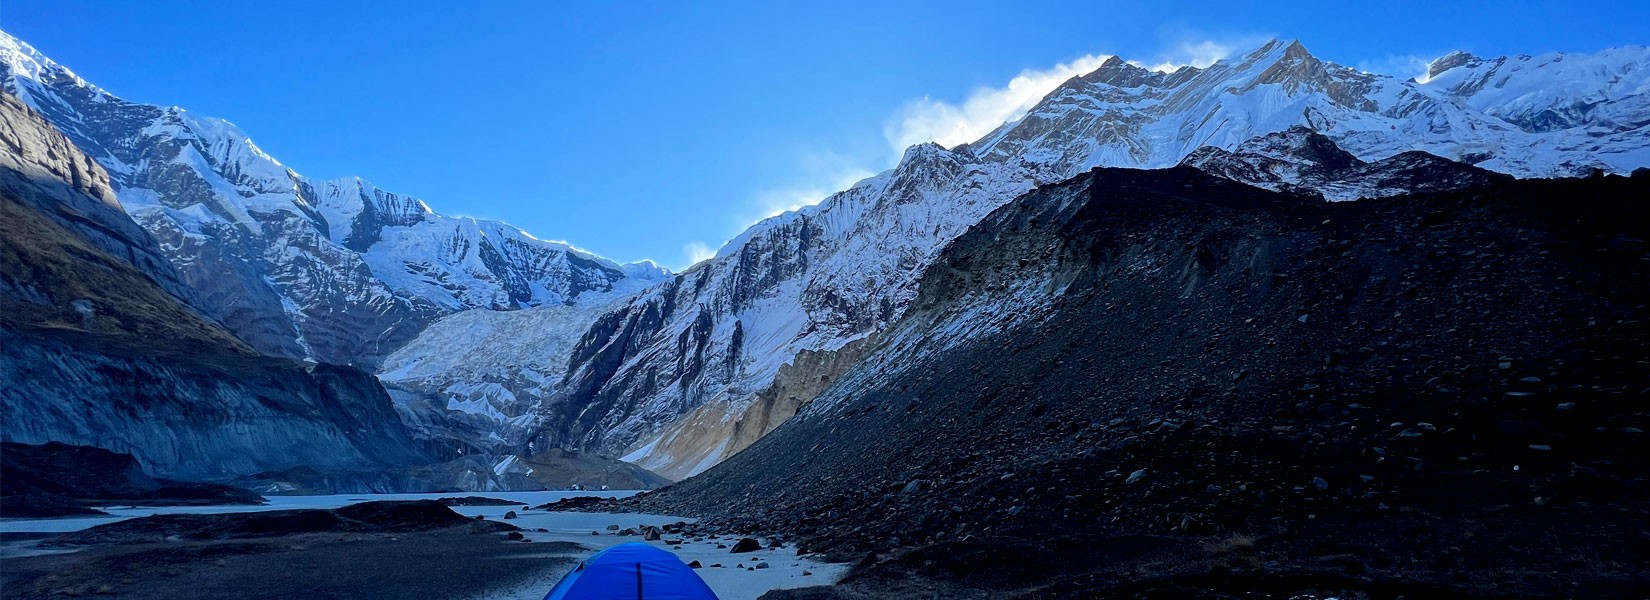 Annapurna North Base Camp Trek